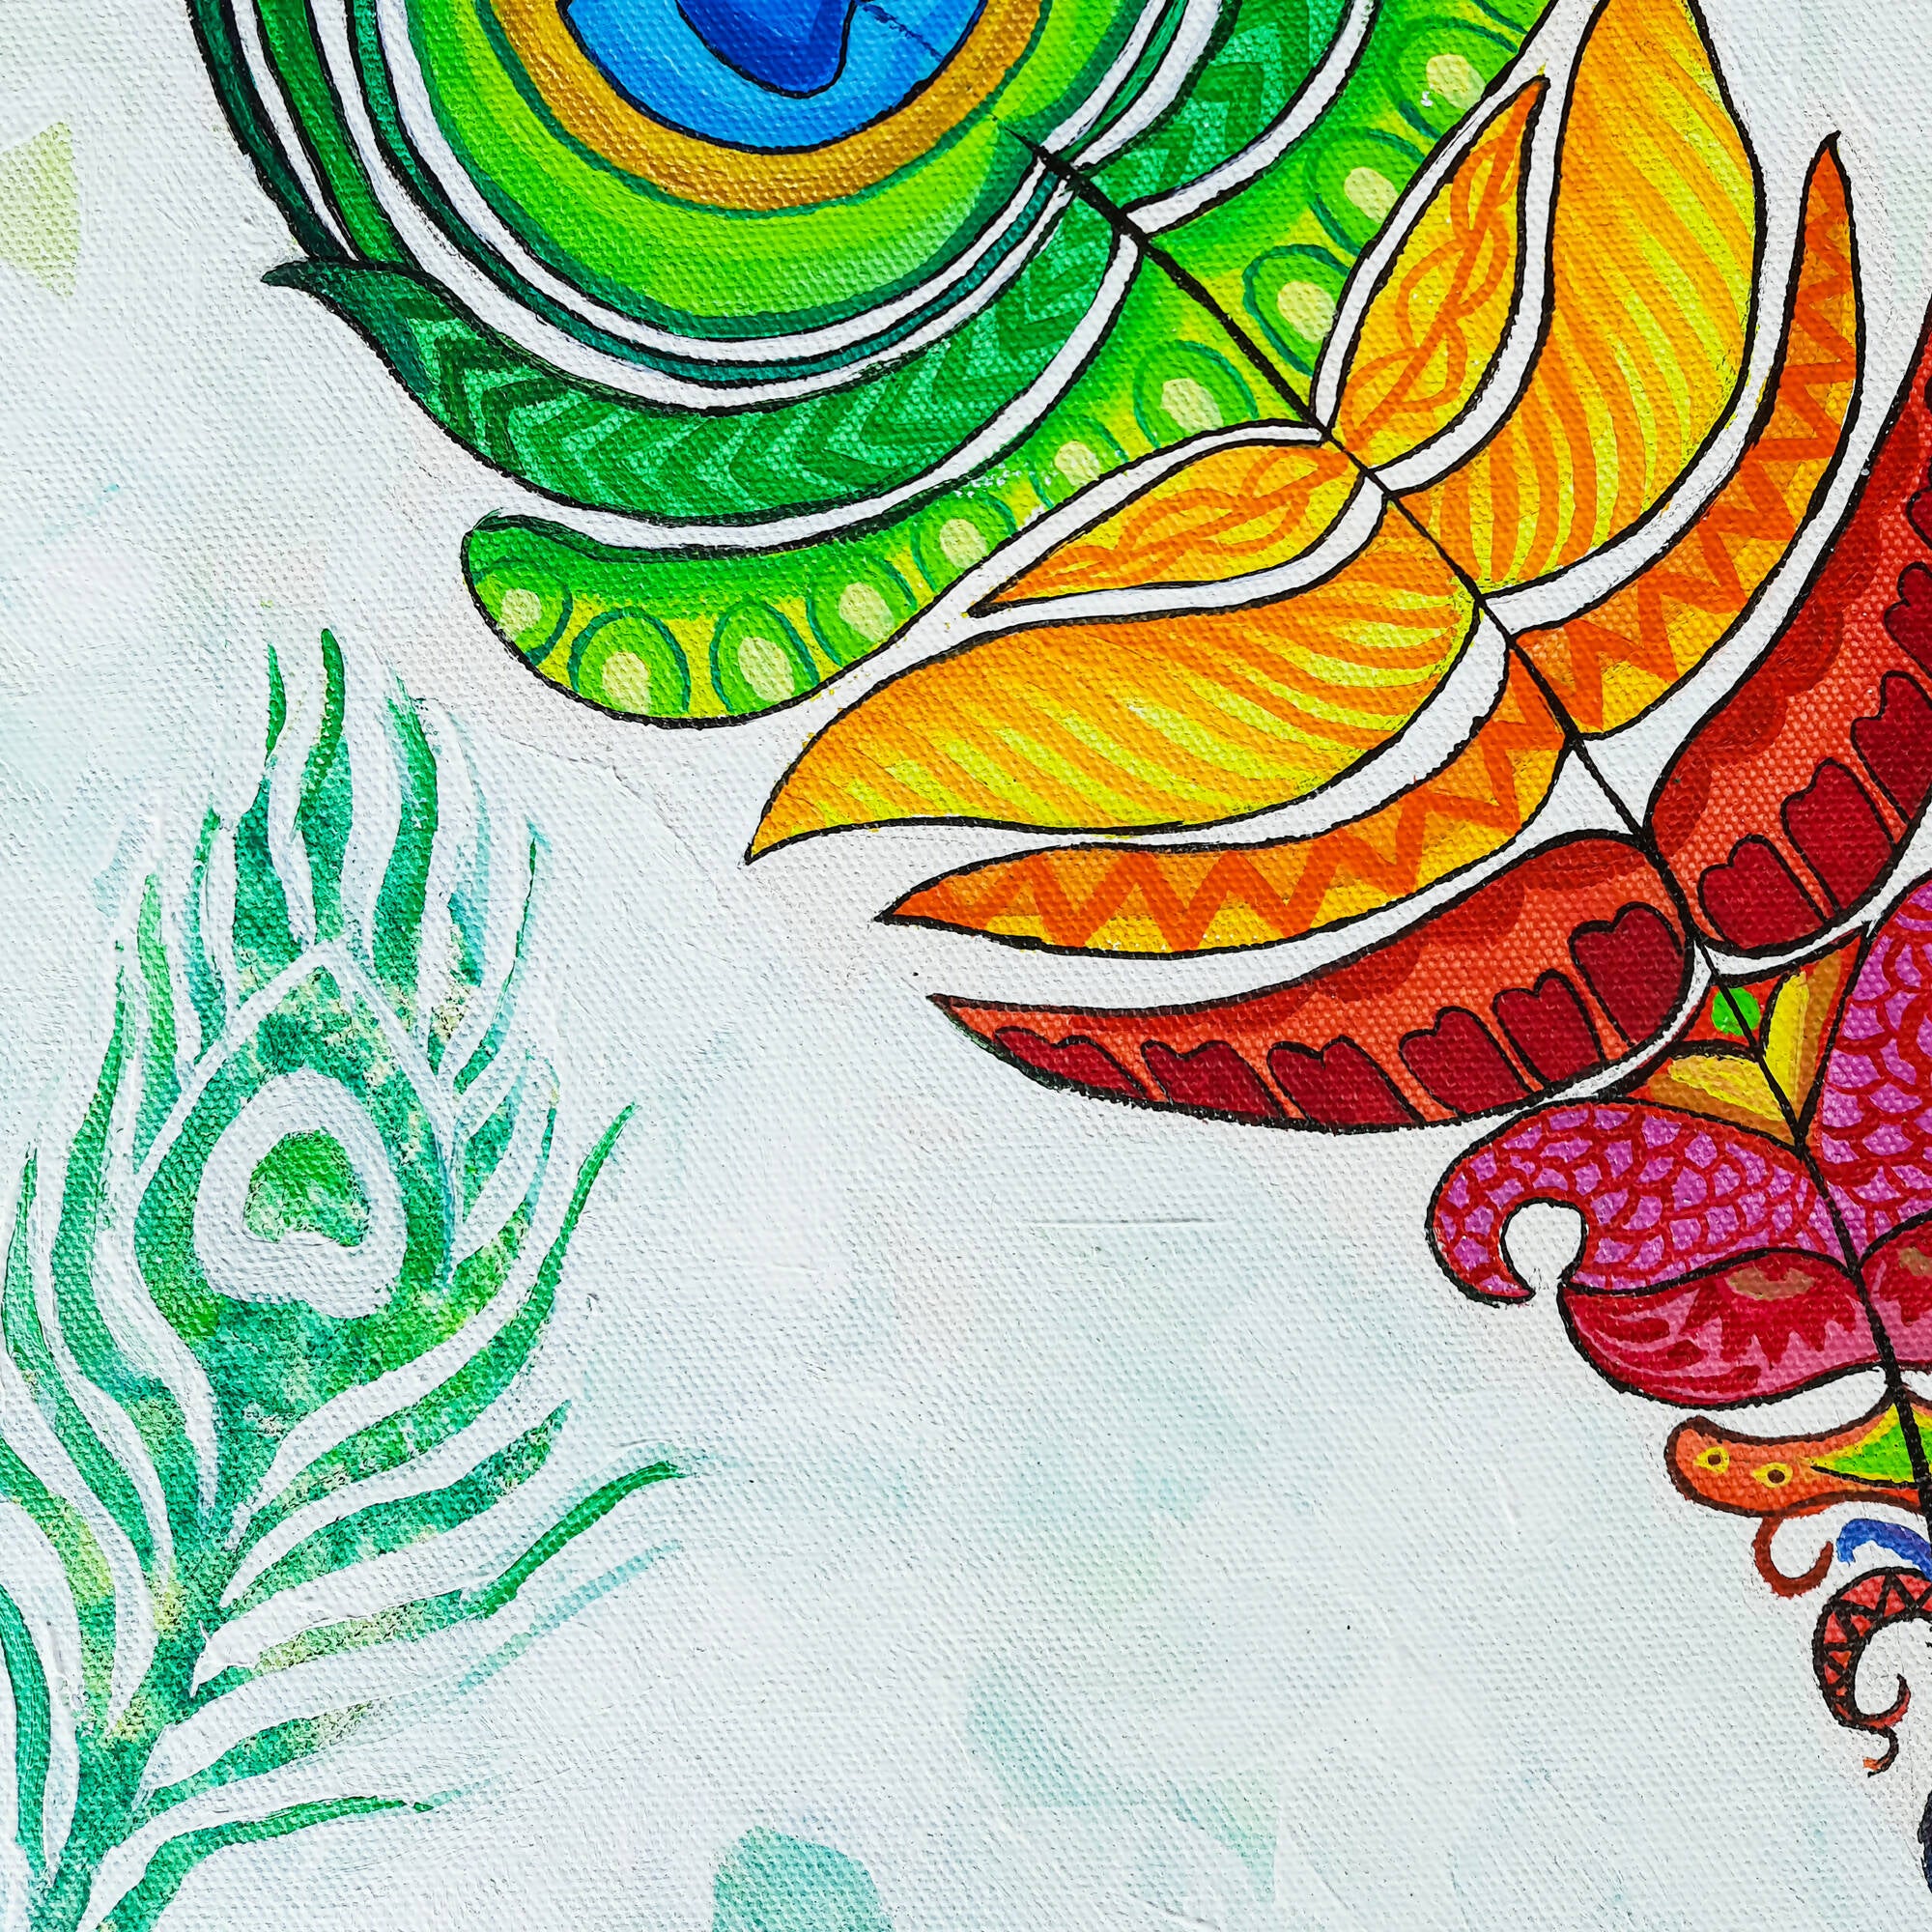 Mandala art / painting on canvas